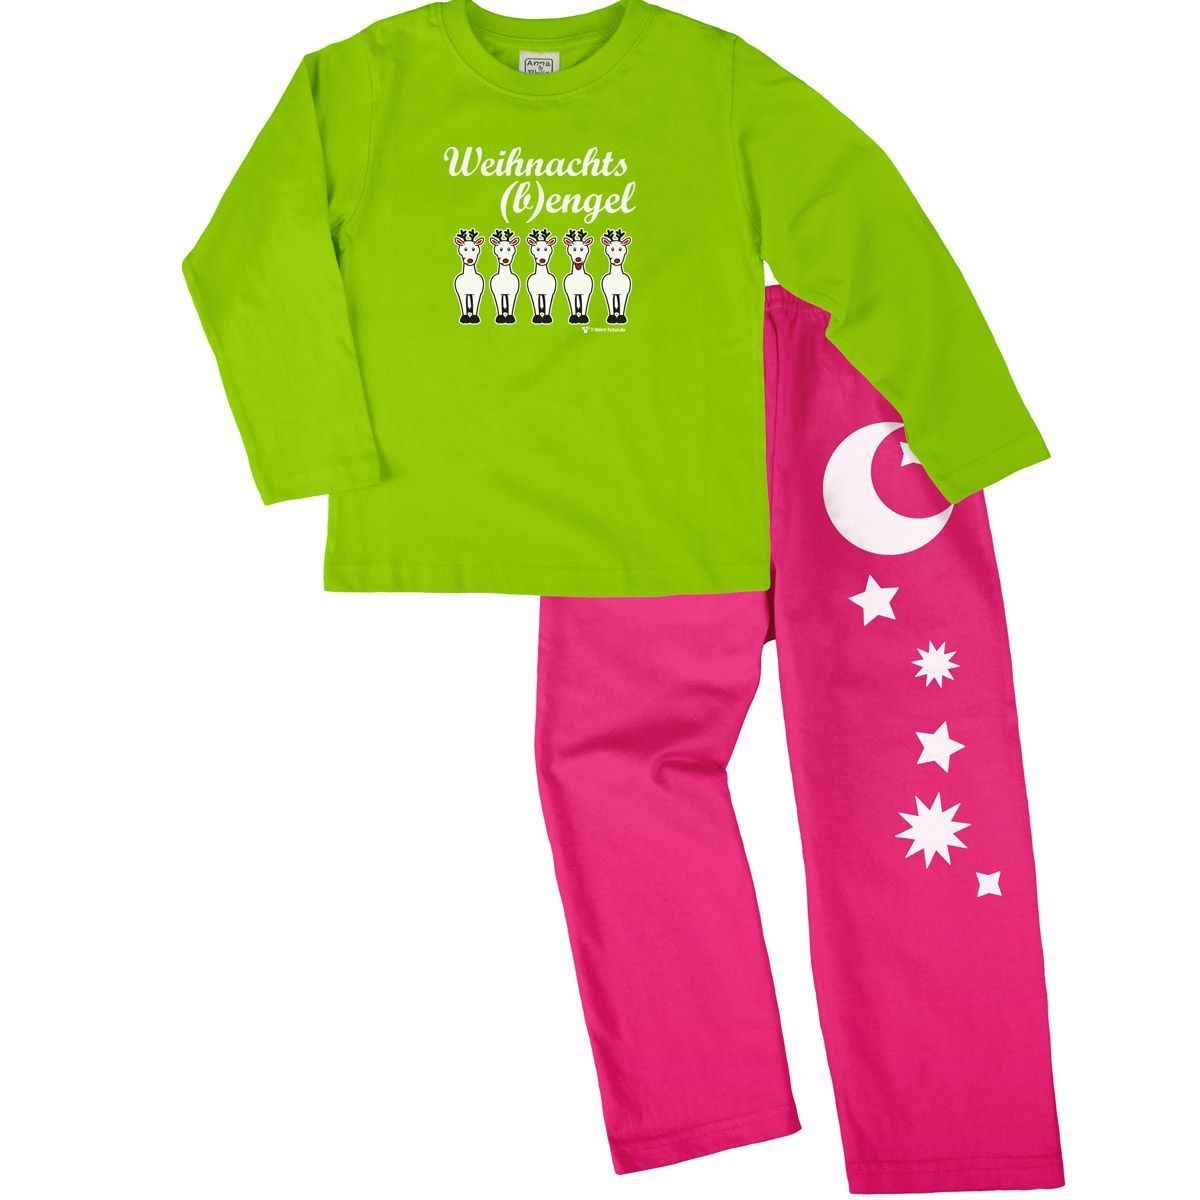 Weihnachtsbengel Pyjama Set hellgrün / pink 92